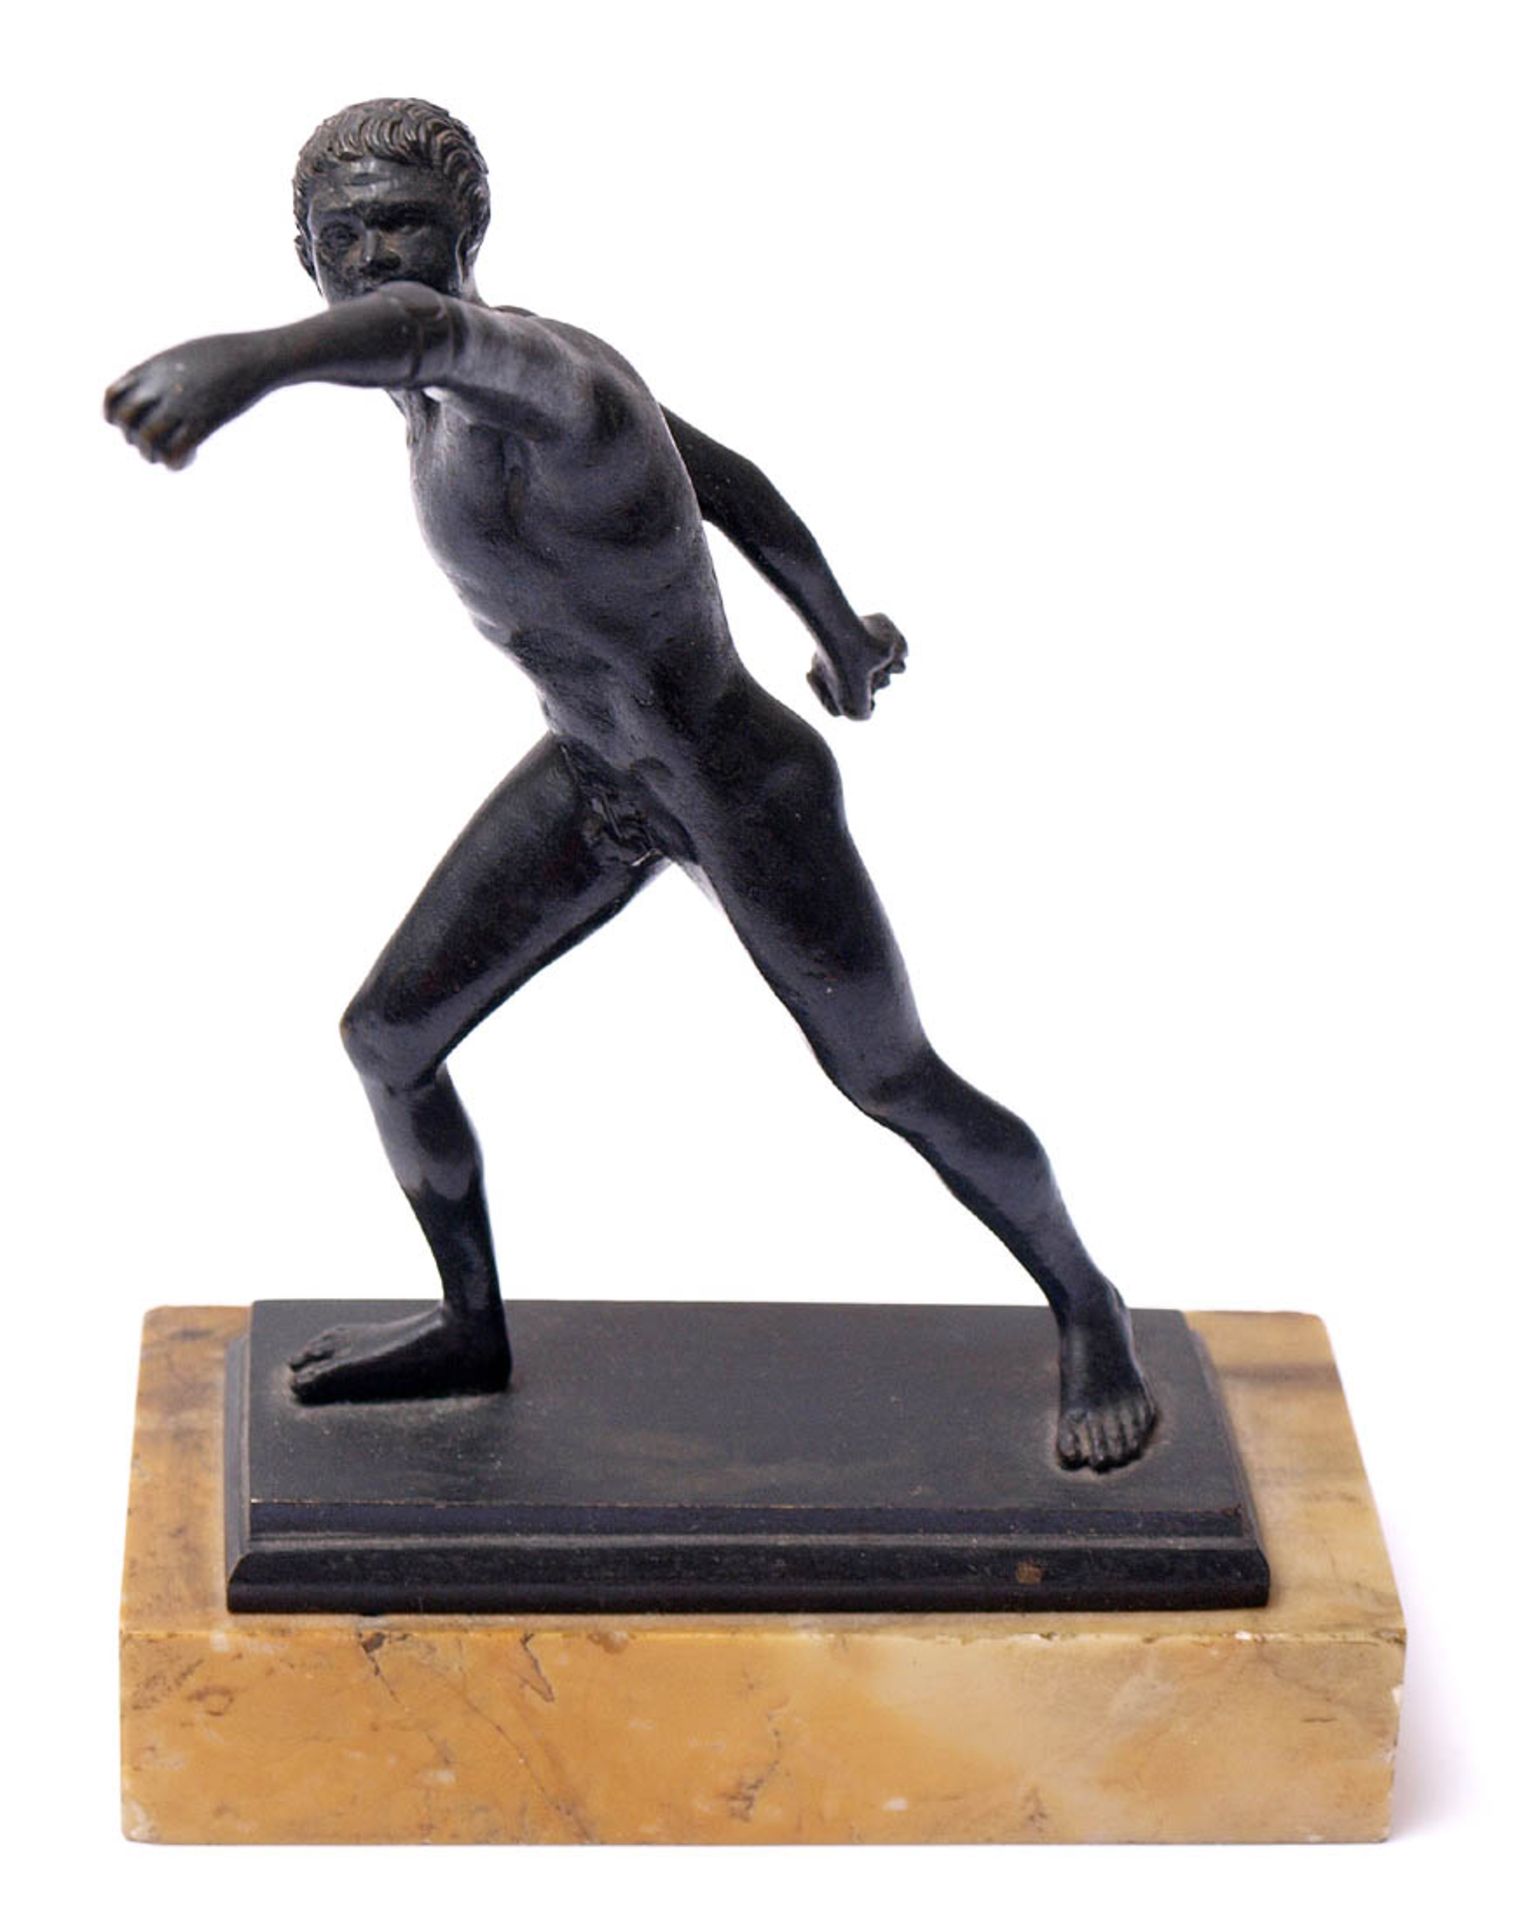 Museumsreplik, 19.Jhdt.Faustkämpfer nach römischem Vorbild. Bronze, schwarz patiniert, auf gelb-